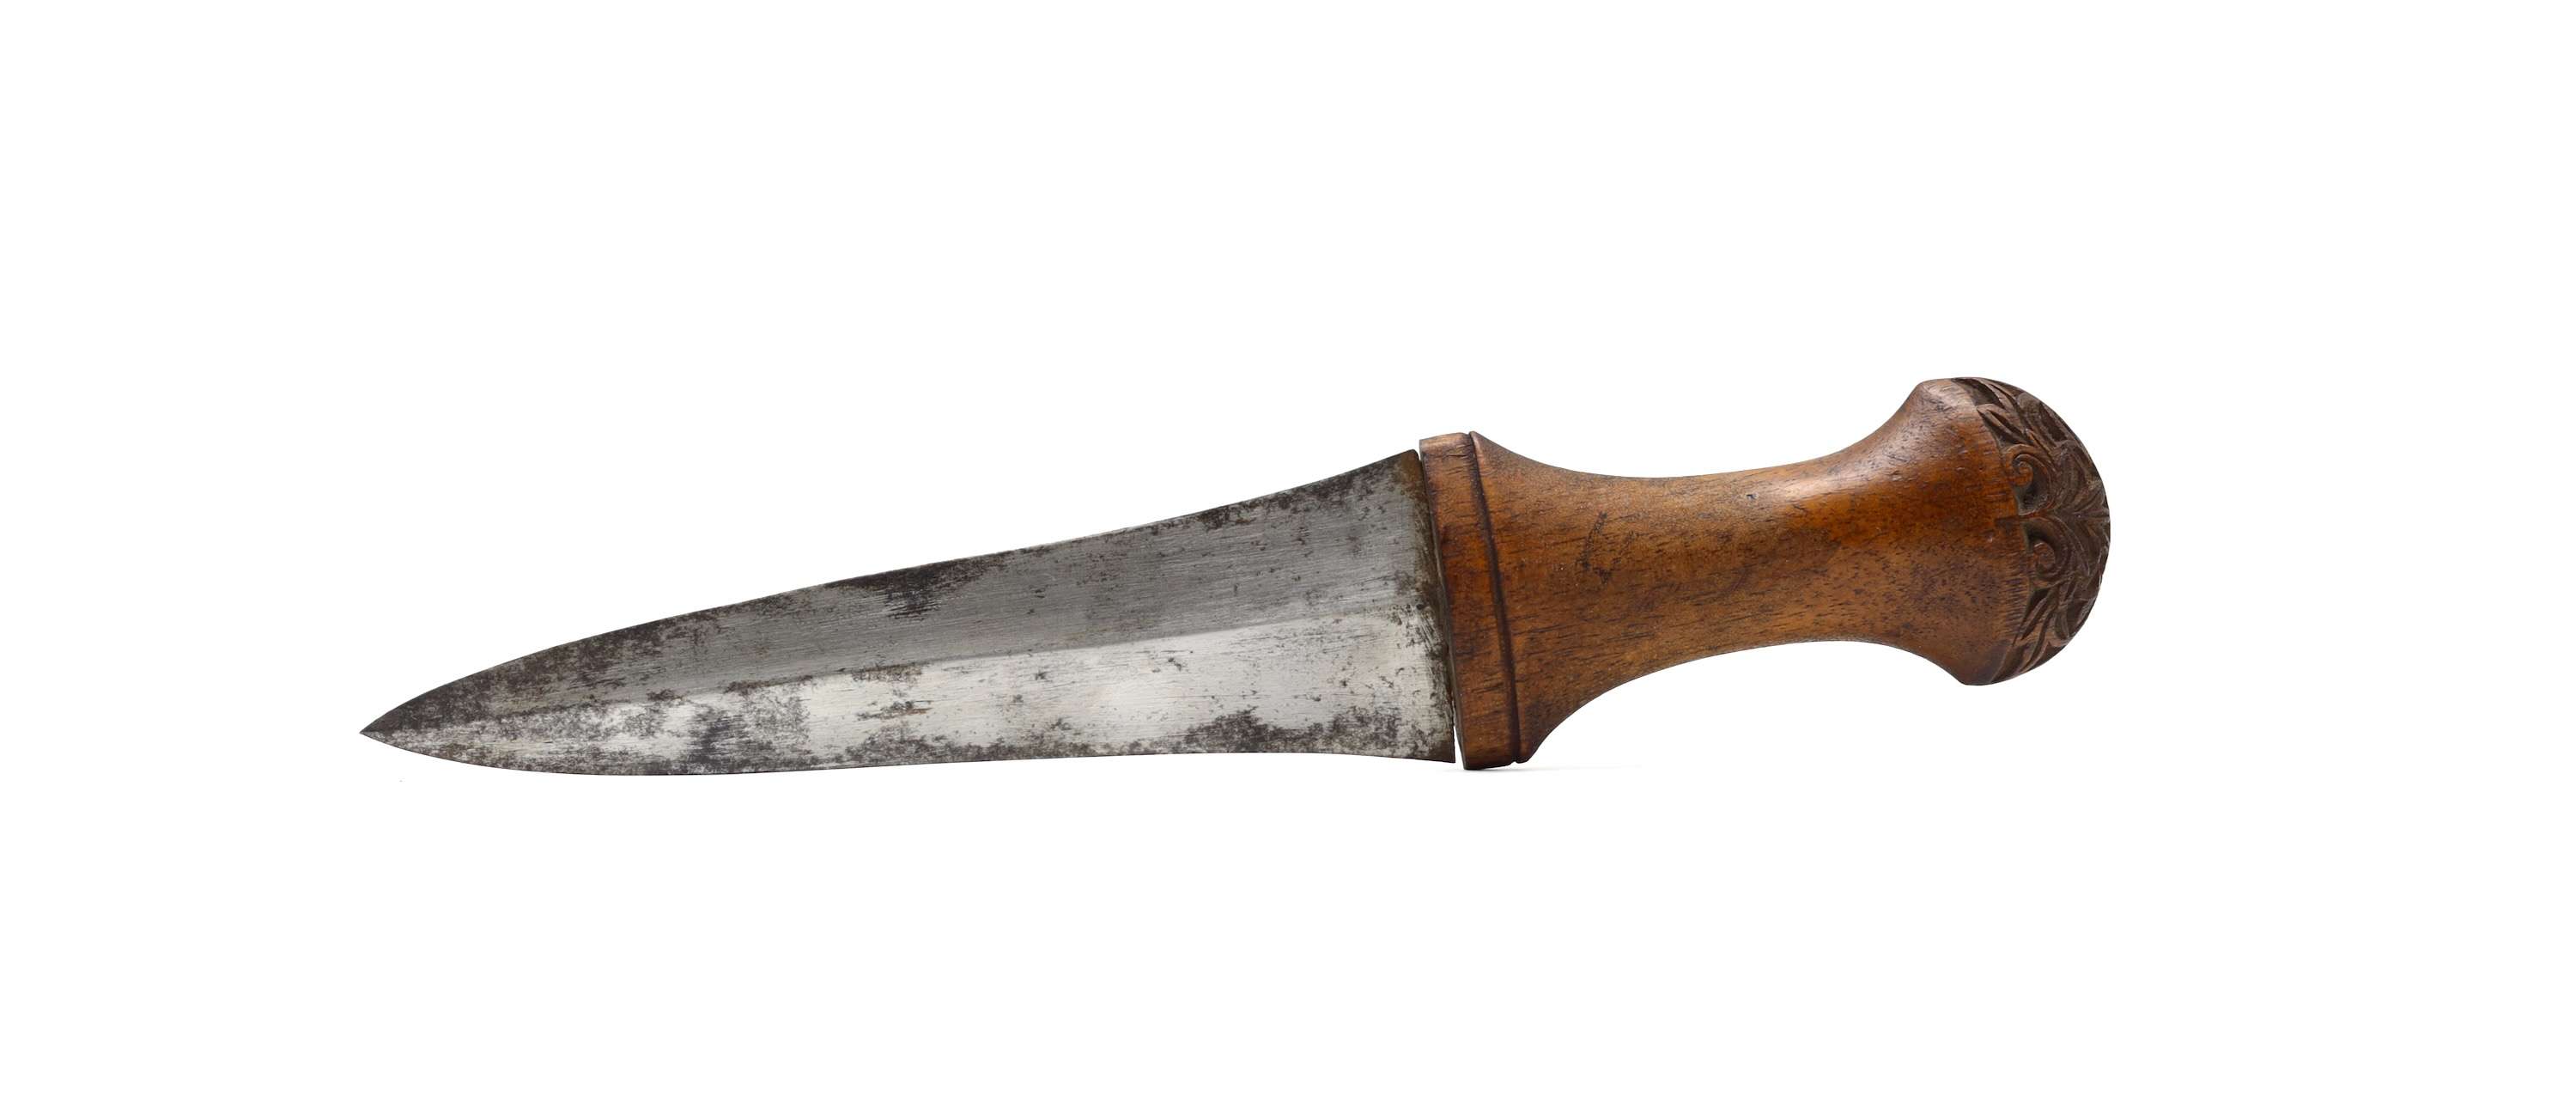 Rare beladau lebar dagger from southern Kalimantan